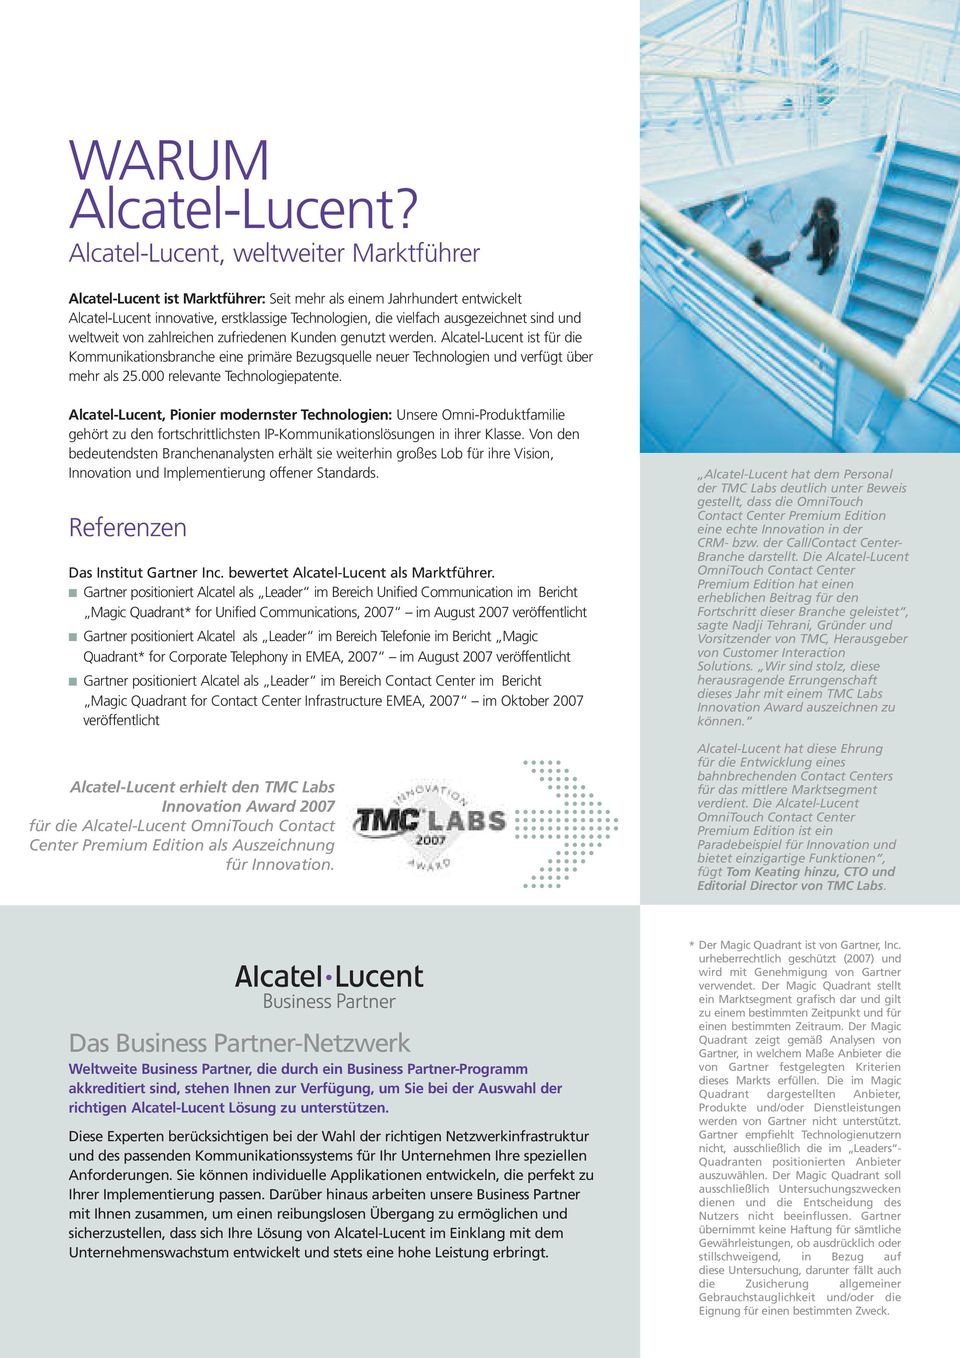 und weltweit von zahlreichen zufriedenen Kunden genutzt werden. Alcatel-Lucent ist für die Kommunikationsbranche eine primäre Bezugsquelle neuer Technologien und verfügt über mehr als 25.